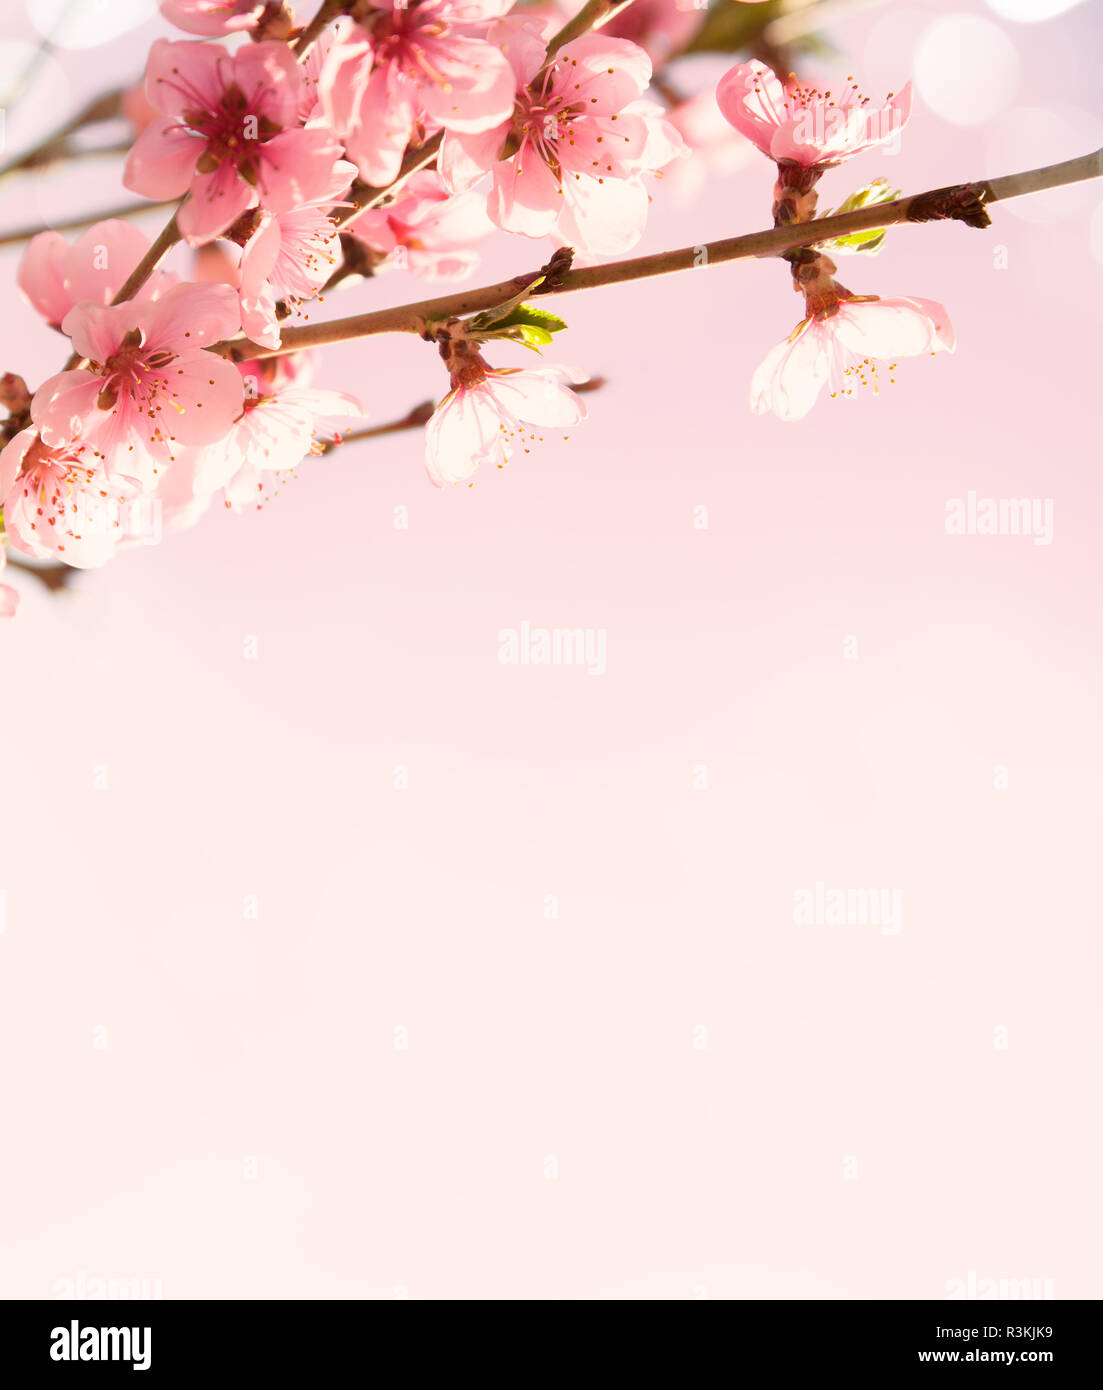 Zweige mit schönen rosa Blumen (Pfirsich) auf rosa Hintergrund. Selektive konzentrieren. Getönten Bild. Stockfoto